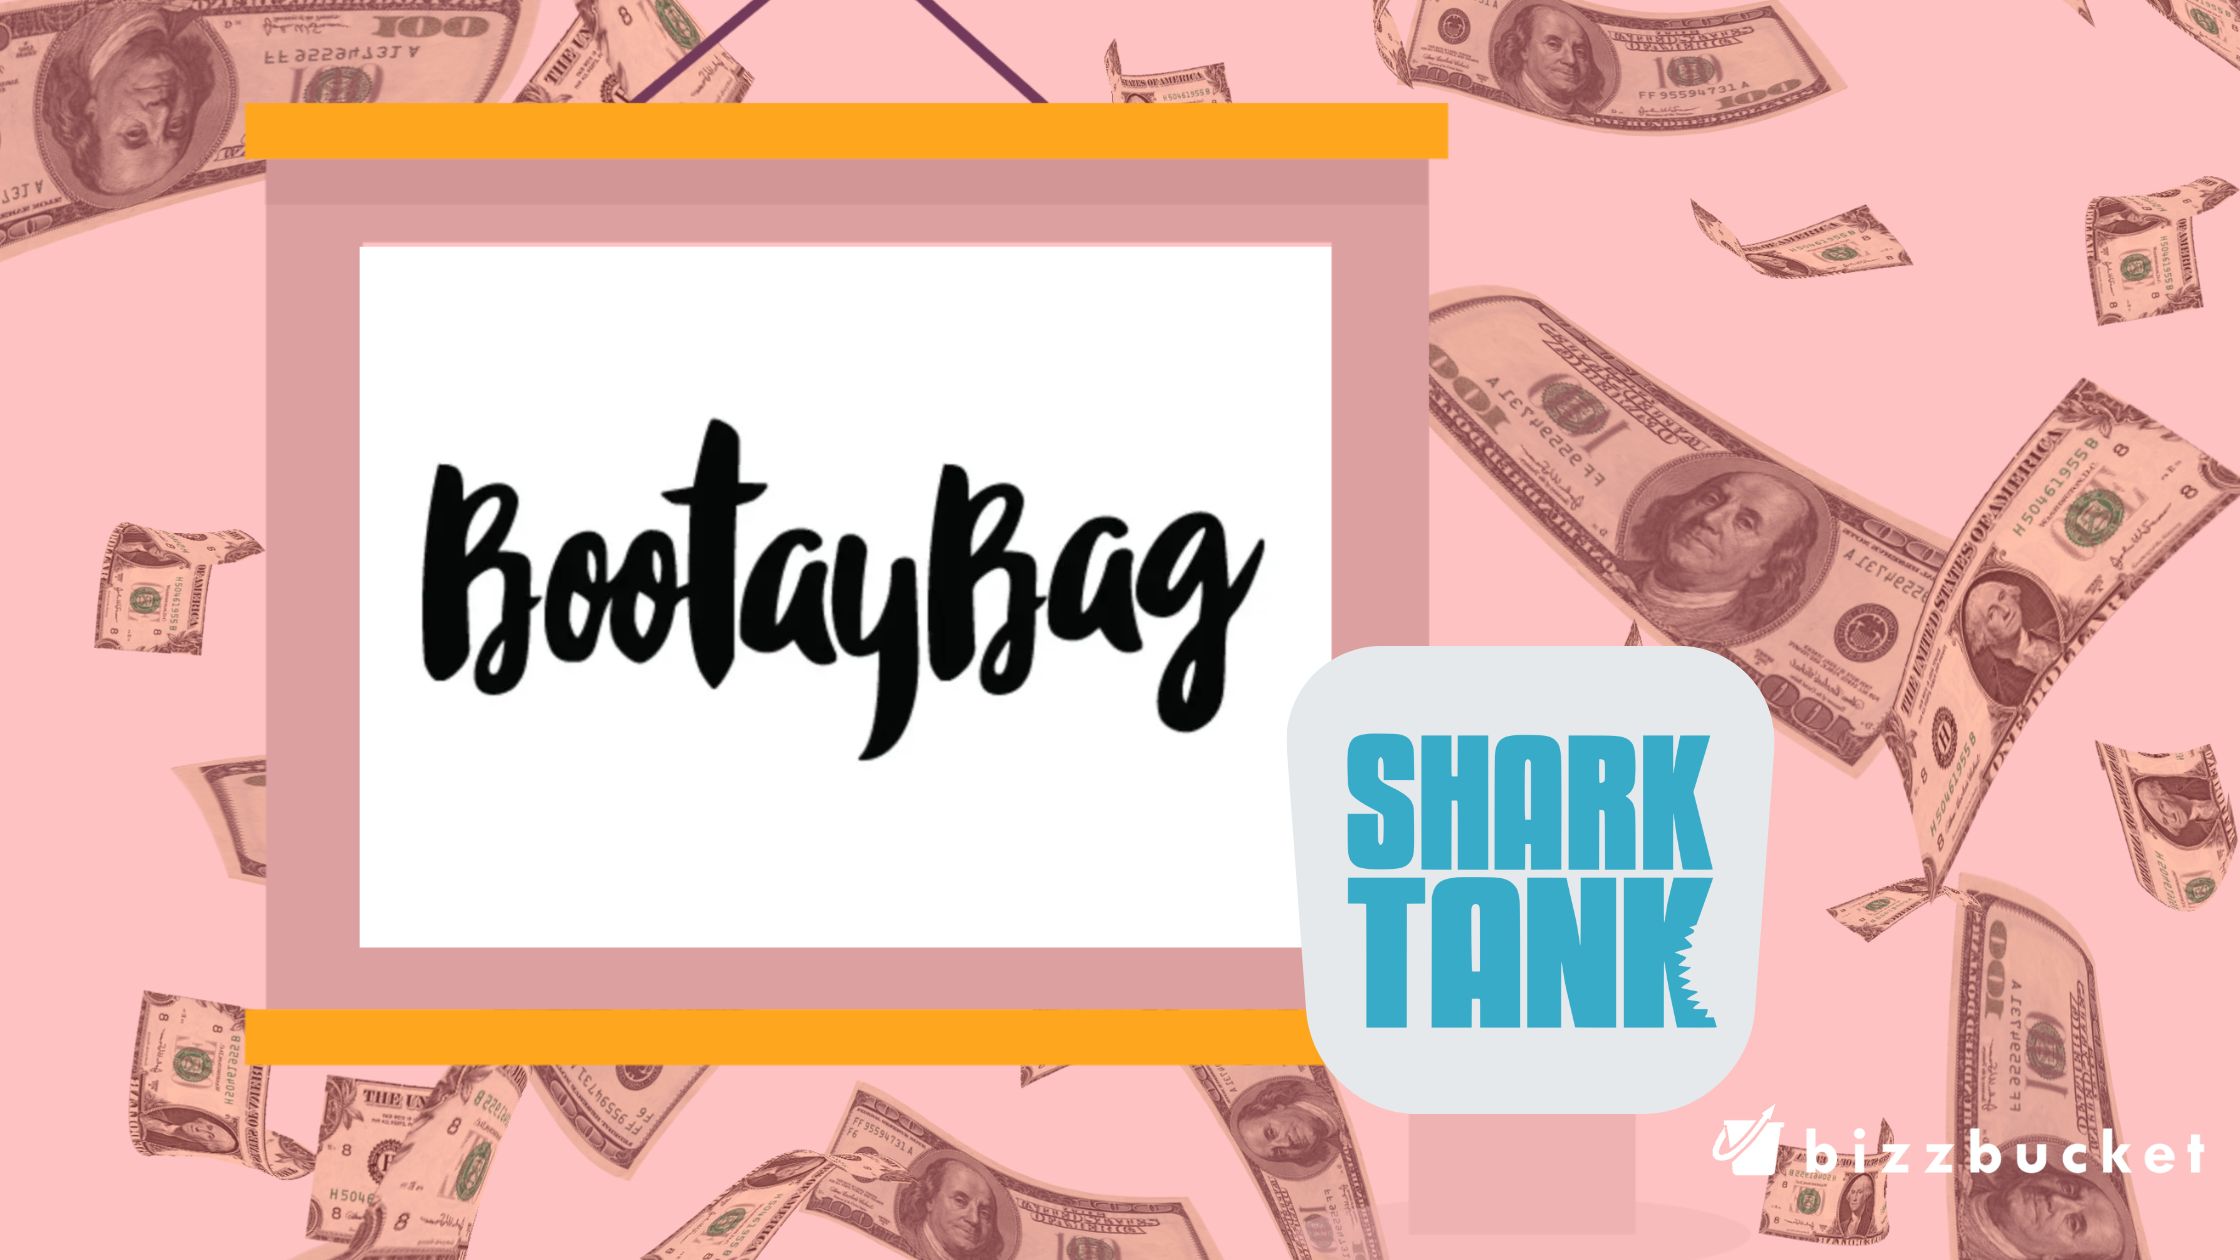 Bootay Bags shark tank update